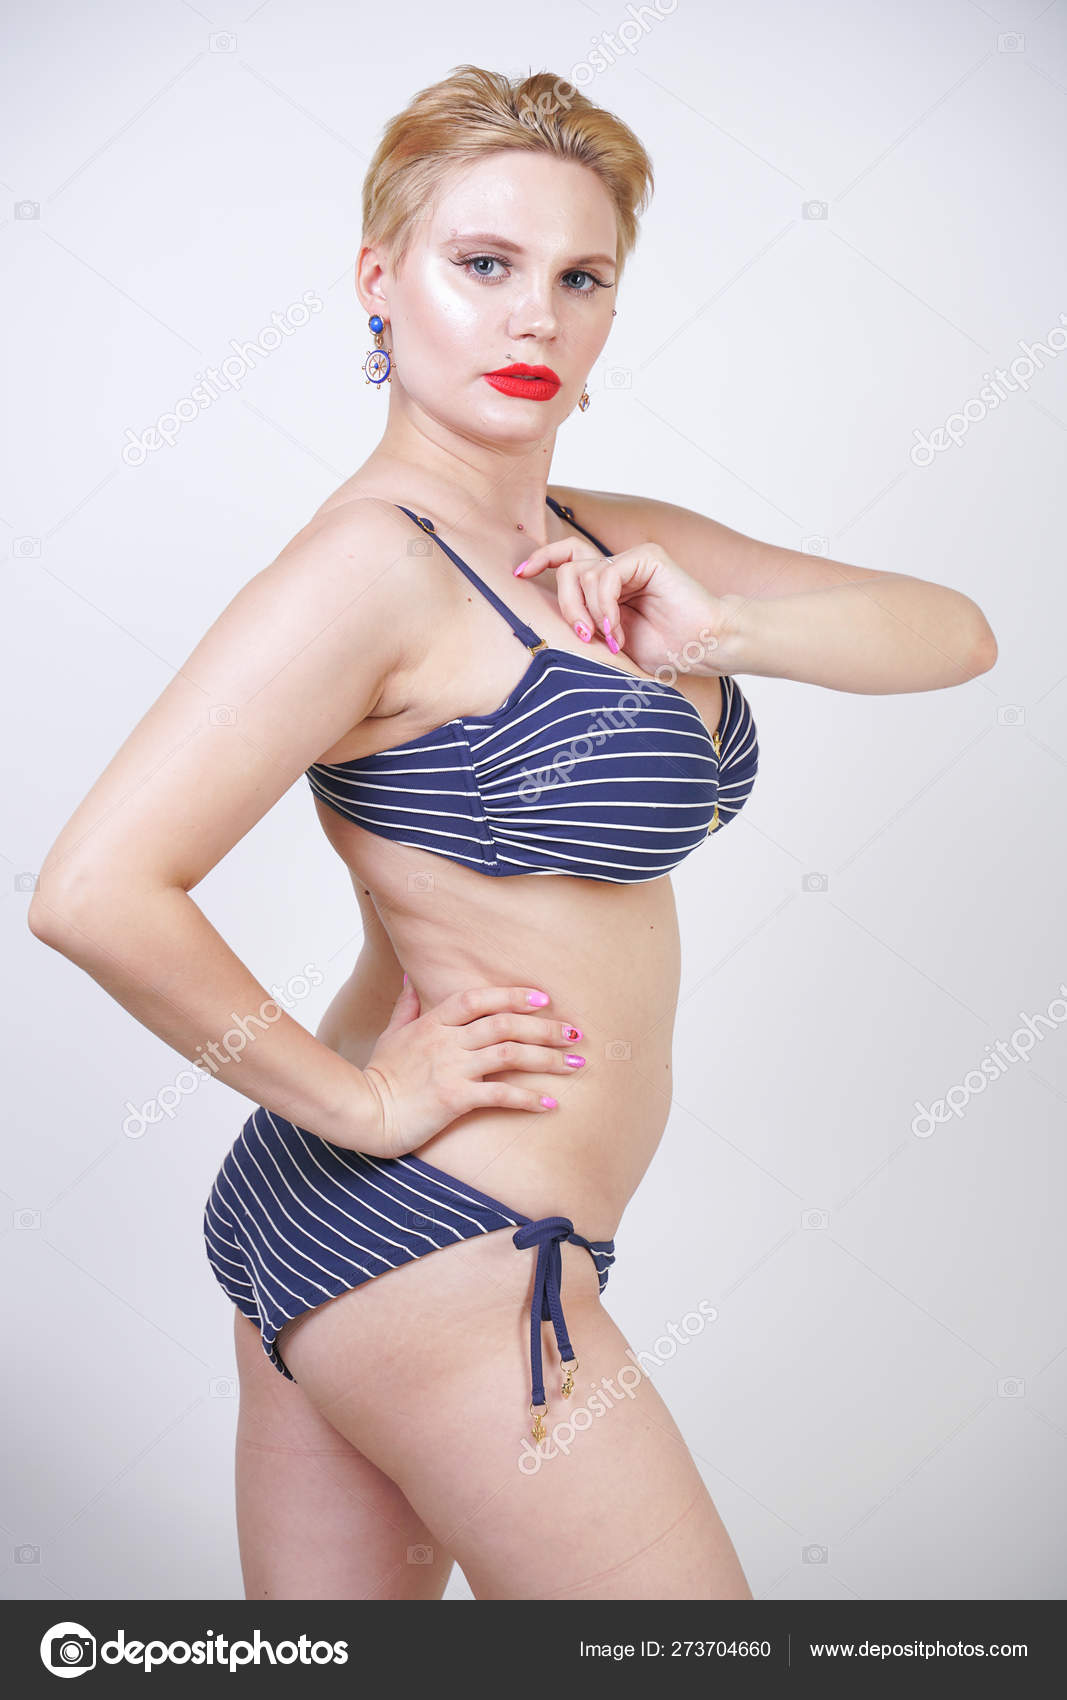 https://st4.depositphotos.com/1091519/27370/i/1600/depositphotos_273704660-stock-photo-beautiful-curvy-caucasian-girl-big.jpg